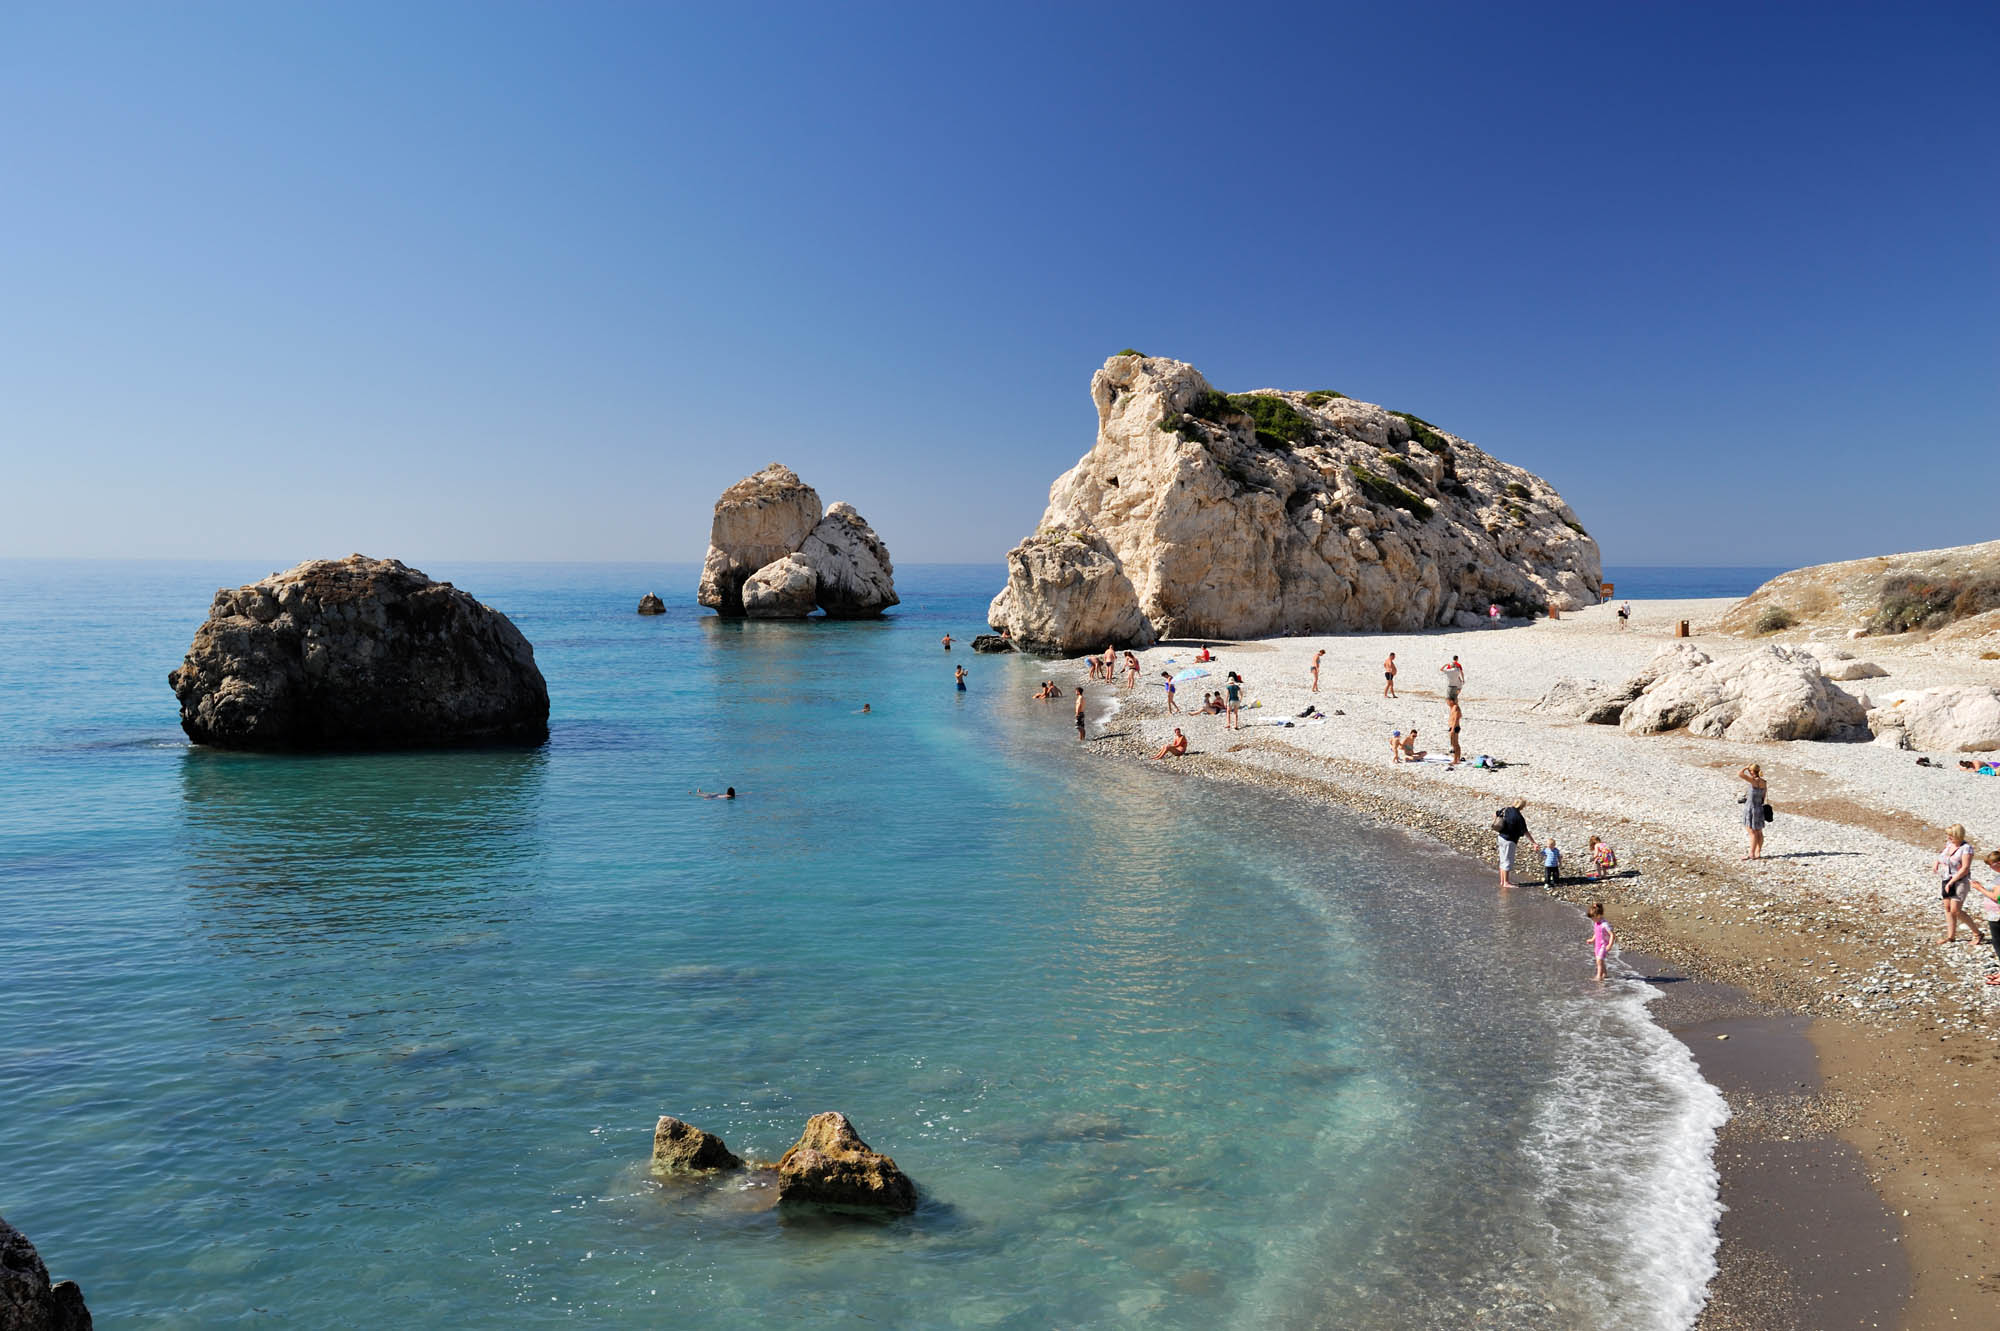 panorama - widok na najsłynniejsza plażę na Cyprze oraz skałę afrodyty, niebo i turkusowa woda